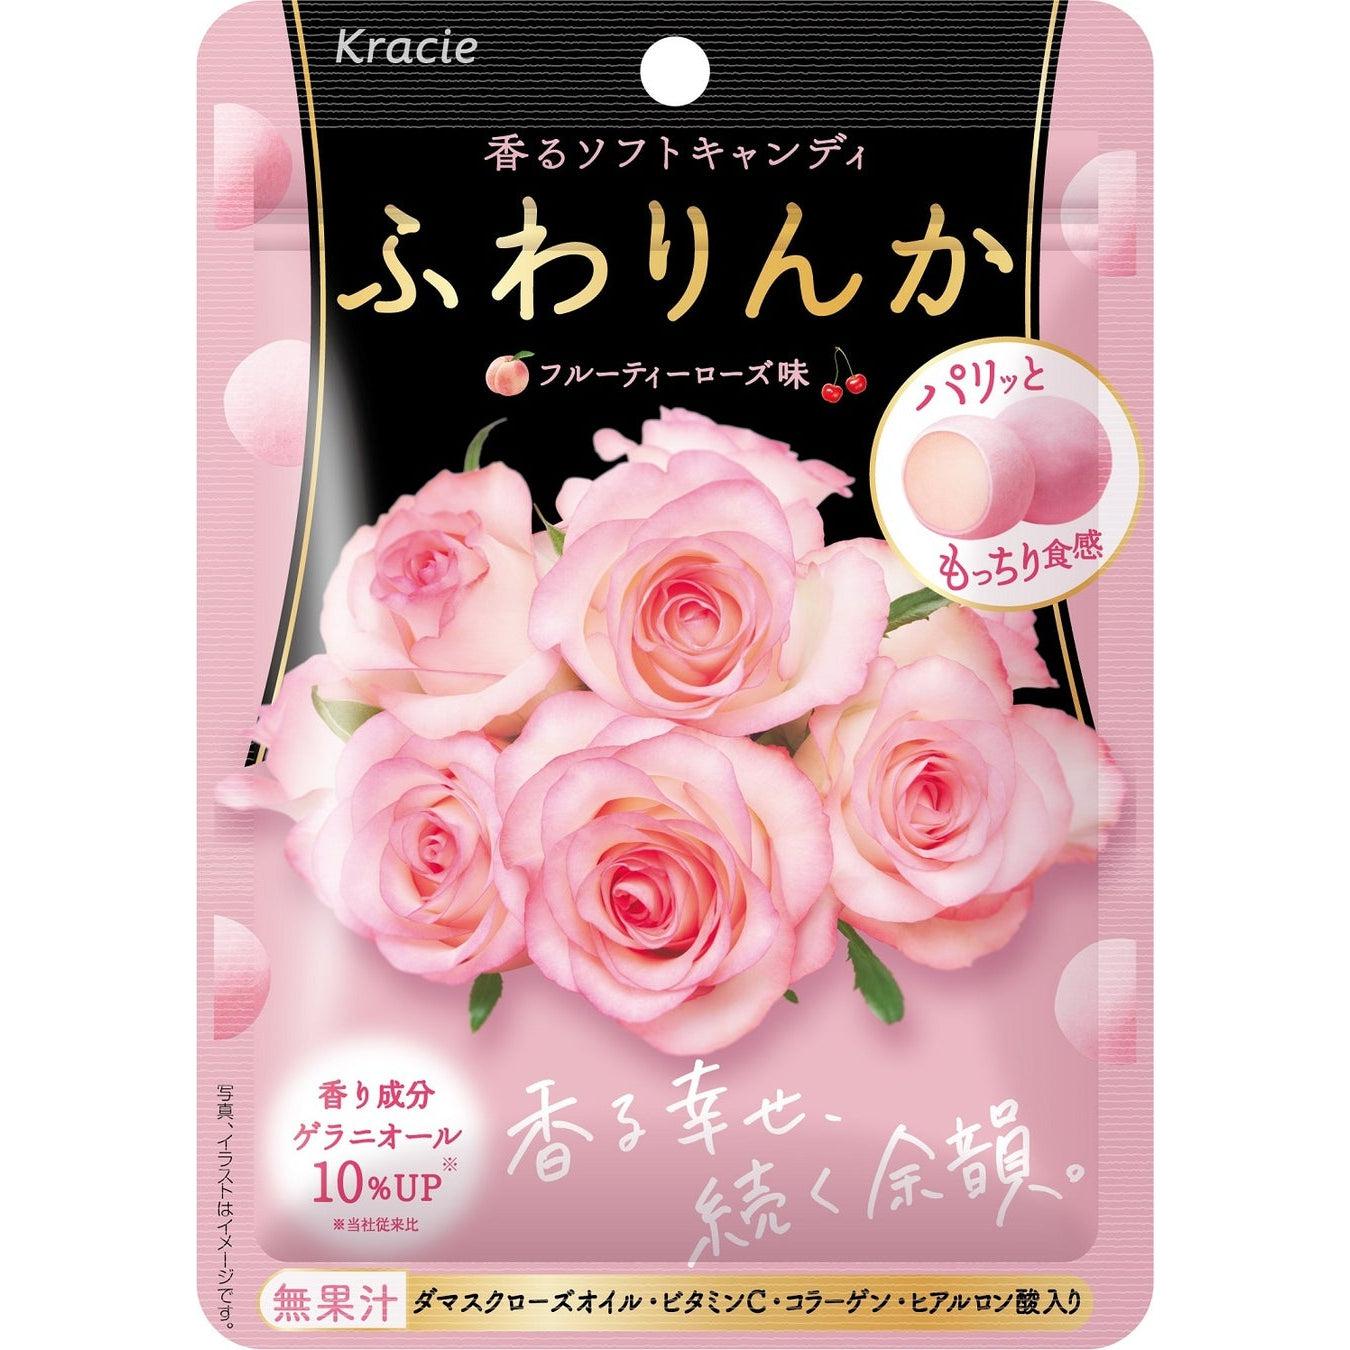 Kracie Fuwarinka Beauty Soft Candy Fruity Rose Flavor 35g